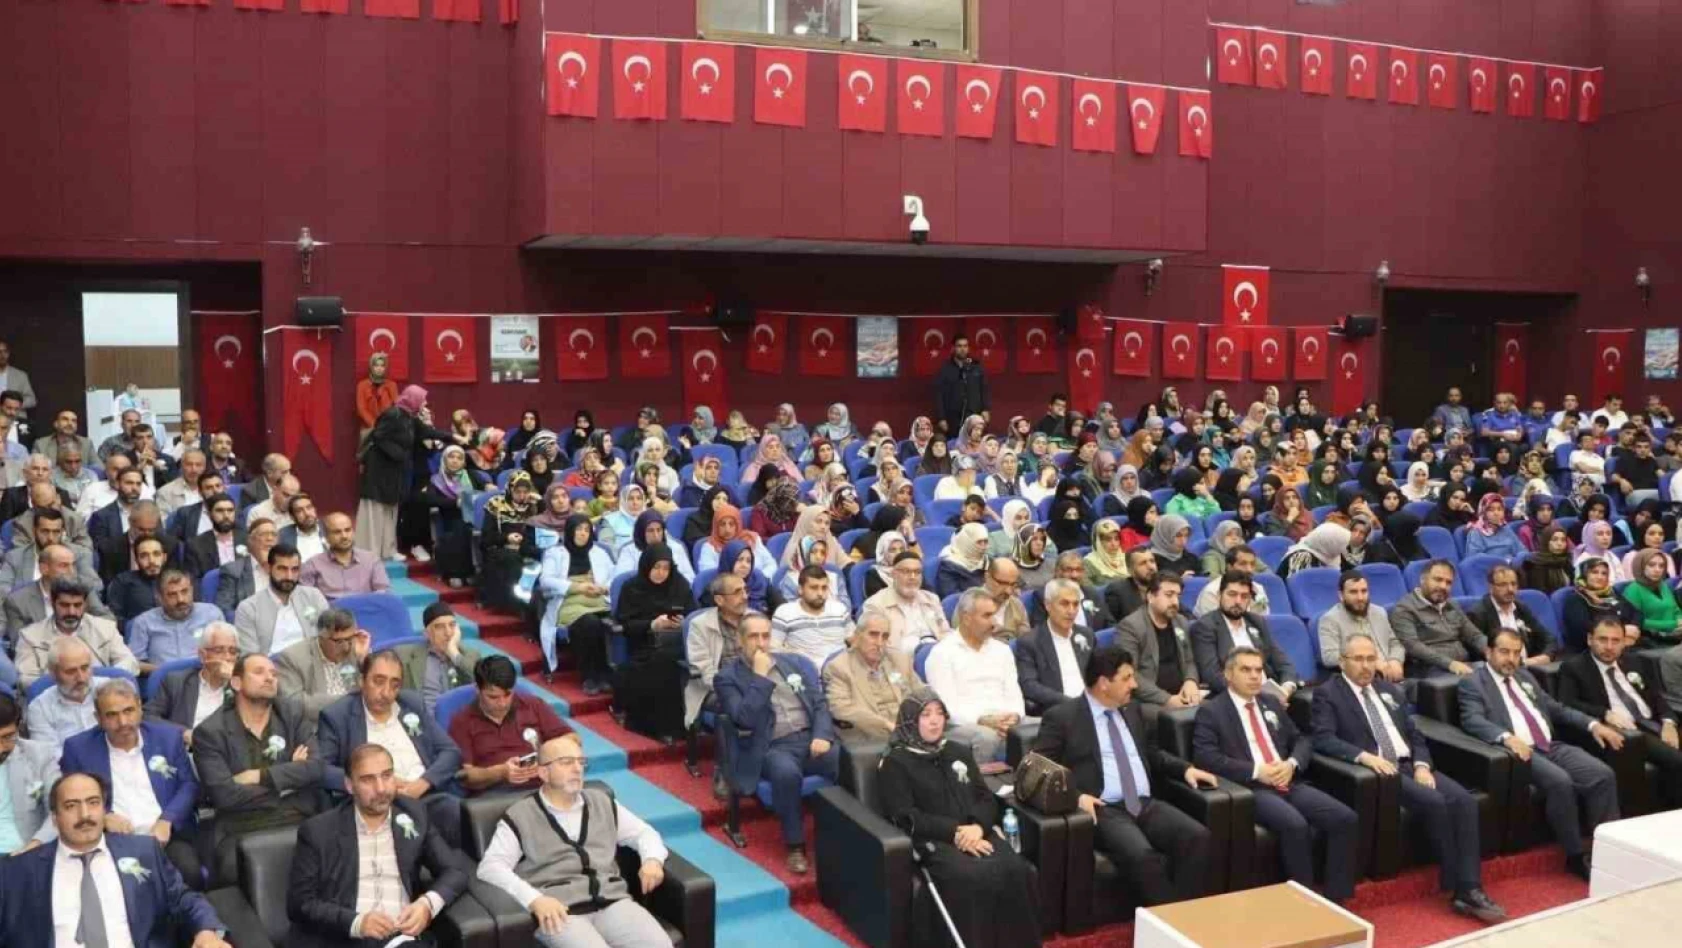 Elazığ'da 'Peygamberimiz, iman ve istikamet' konulu konferans düzenlendi